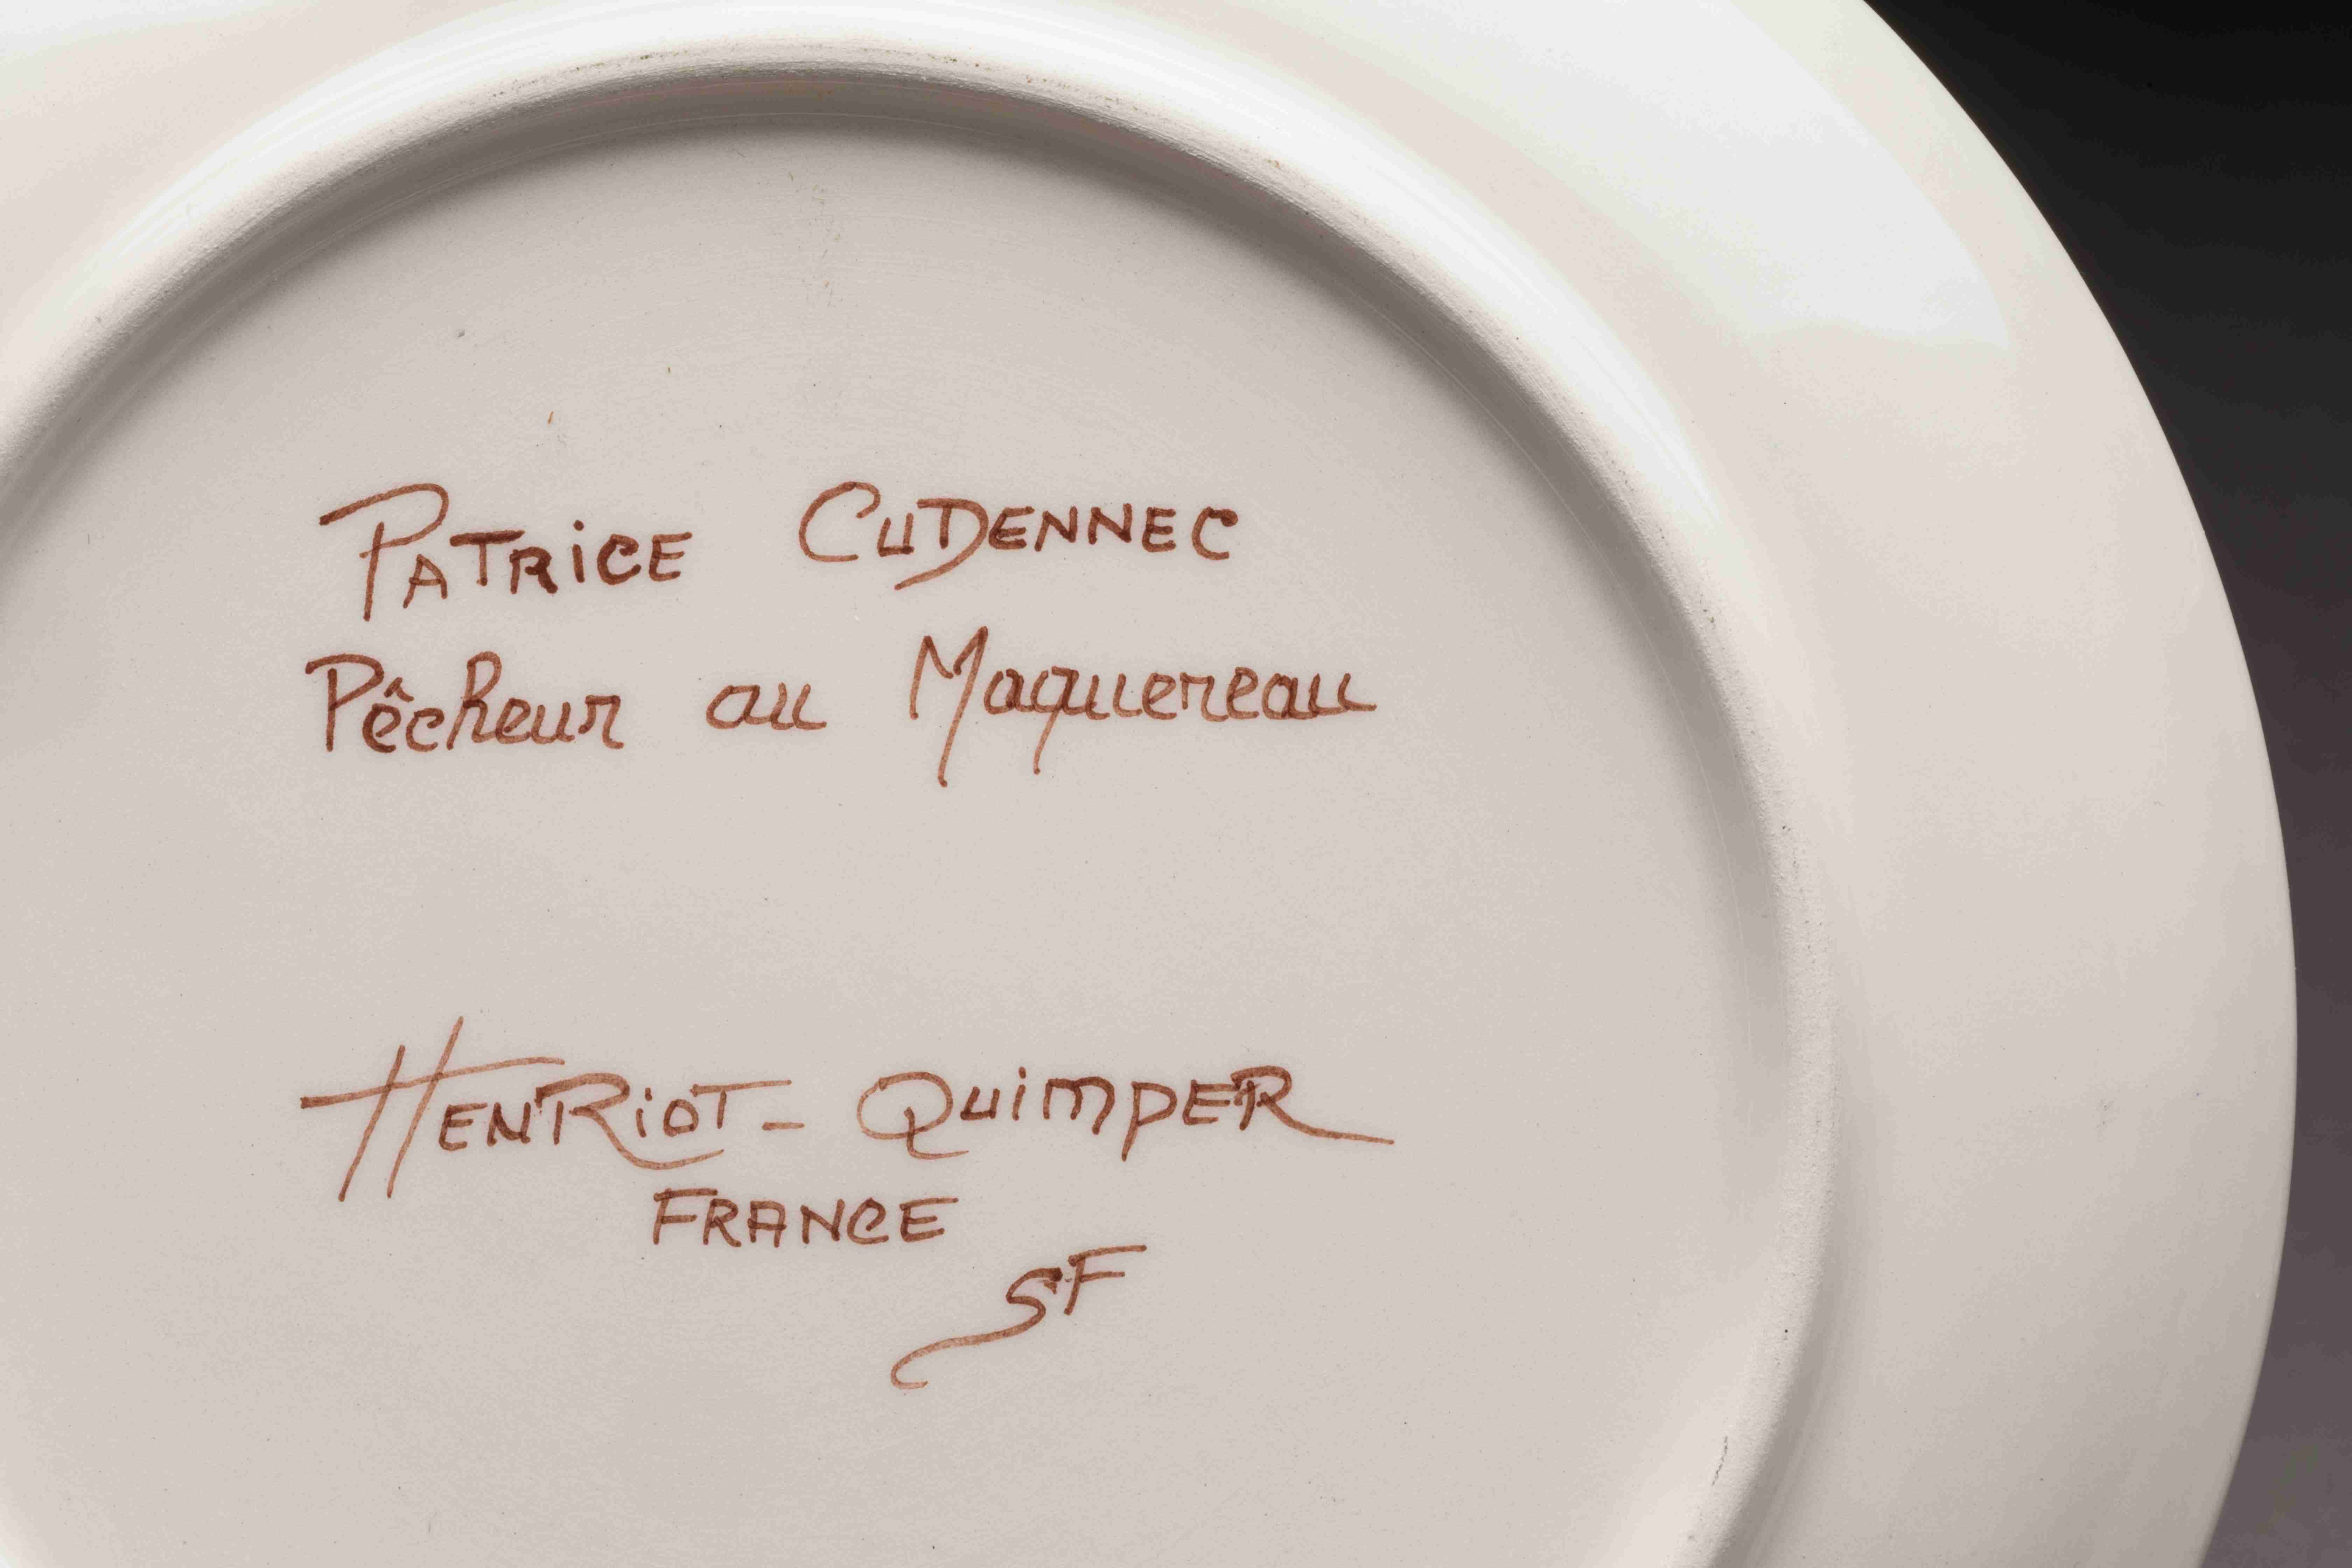 Patrice CUDENNEC (Saint-Brieuc, 1952) - HENRIOT, Quimper
"Pêcheur au maquereau".
Petite ASSIETTE...